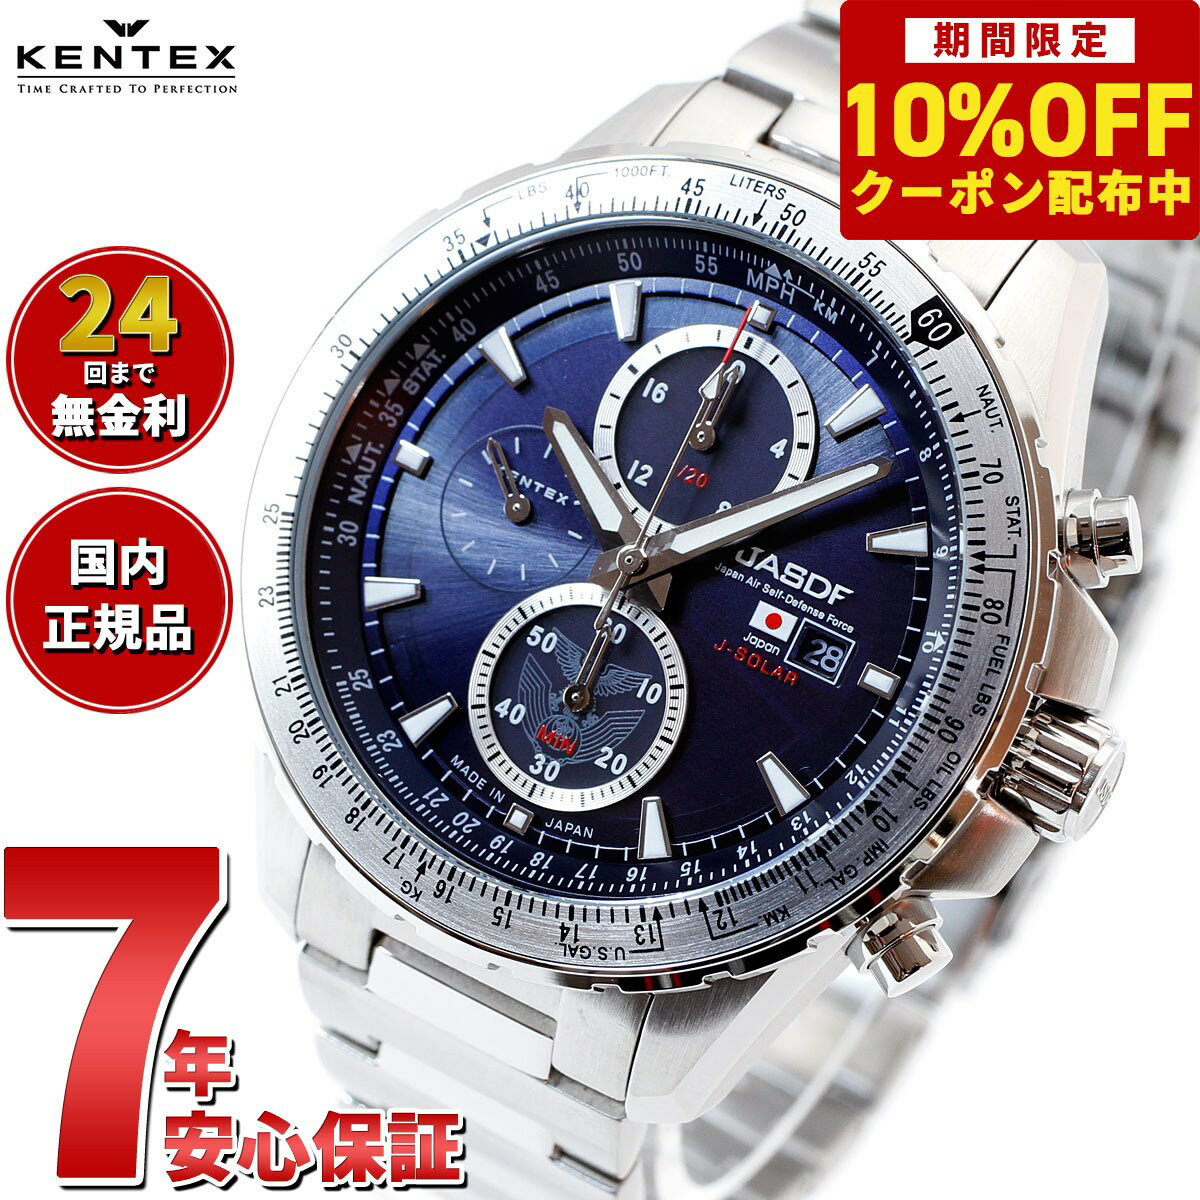 3 850円OFFクーポン ＆店内ポイント最大39倍 5月20日 ケンテックス KENTEX ソーラー 腕時計 時計 メンズ JASDF 航空自衛隊 ソーラープロ JSDF SOLAR Pro クロノグラフ 日本製 S802M-1